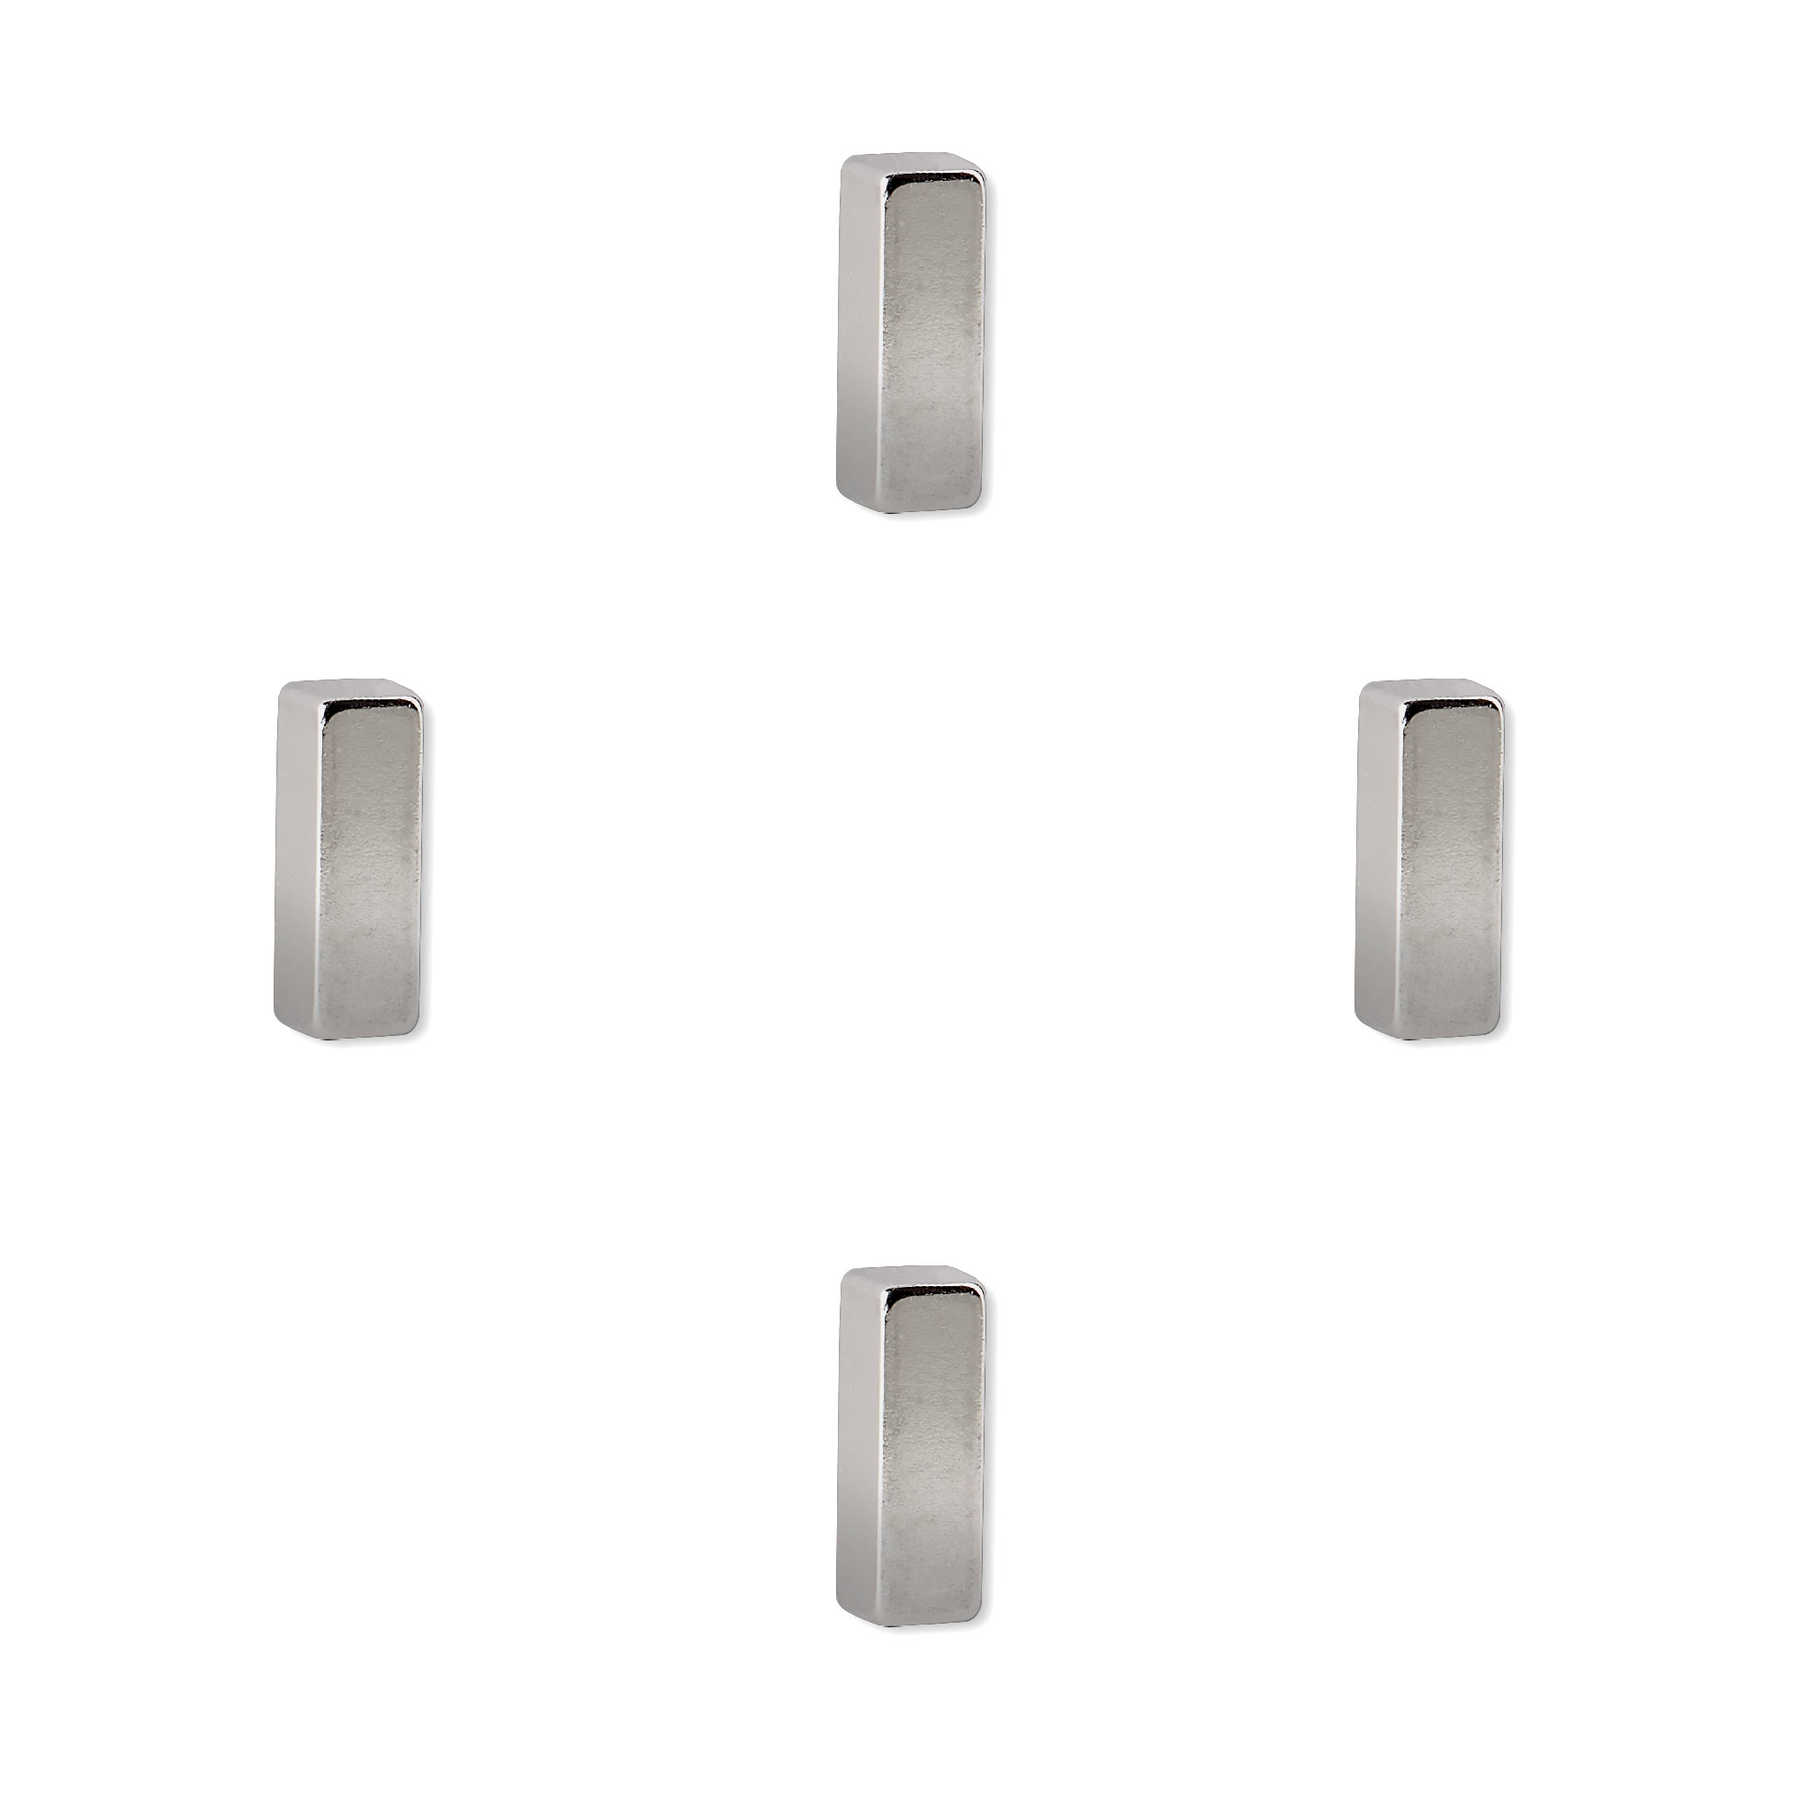         4er-Set Magneten in 6 x 18 x 6 mm
    